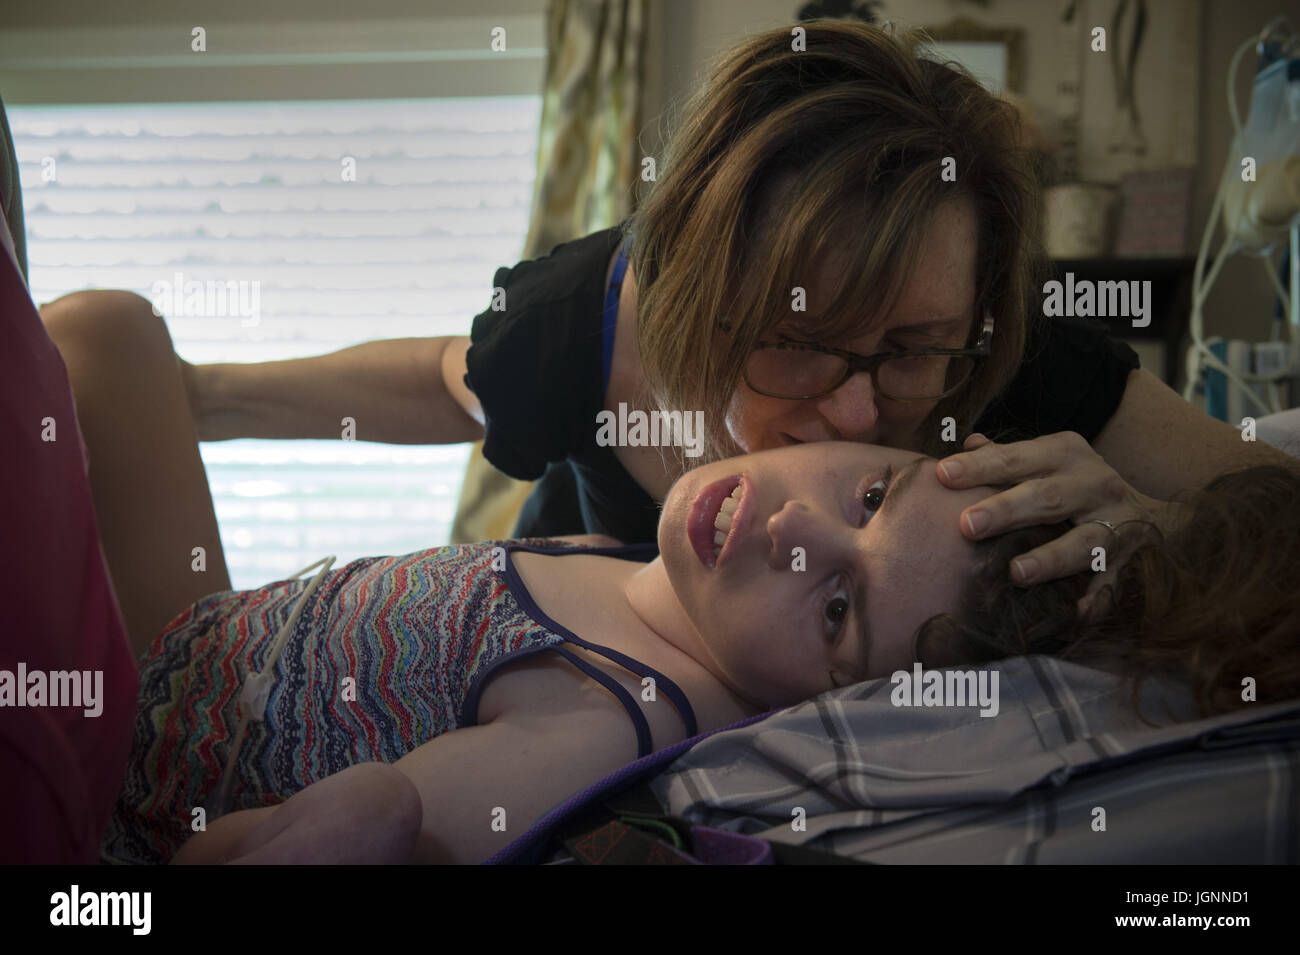 Comer, GA, USA. 5 juillet, 2017. Pam Walley et sa fille Callie's caregiver Lori Cain font de leur mieux pour stabiliser la jambe de Callie après son fémur cassé pendant qu'on la propose dans son lit. Callie a la paralysie cérébrale et est incapable de parler ou de marcher. À 22 ans, elle est soigné à la maison, avec l'aide des infirmières et d'aides, financées en partie par une renonciation de Medicaid qui aide les familles et les personnes handicapées - survivre et réussir --- en communauté plutôt que d'institutions. Crédit : Robin Rayne Nelson/ZUMA/Alamy Fil Live News Banque D'Images